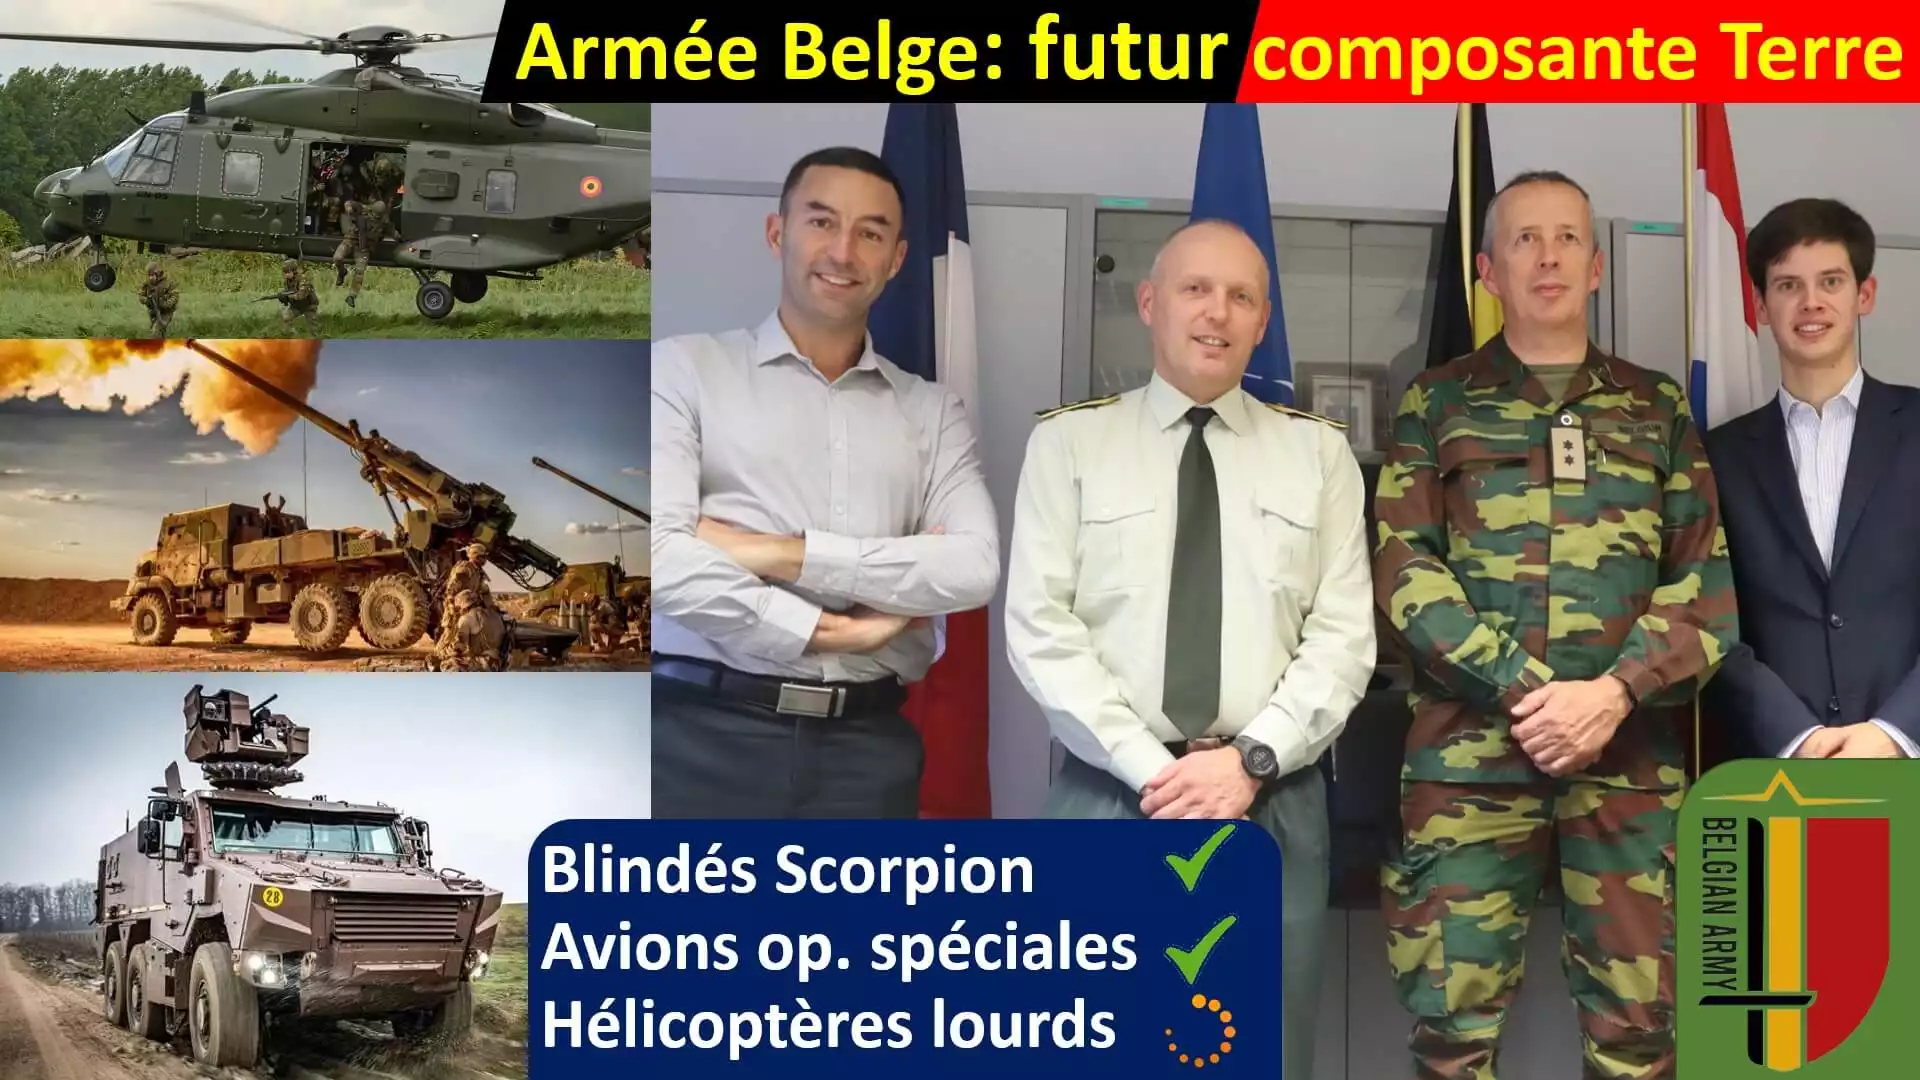 [ARMÉE BELGE] Hélicoptères lourds, programme SCORPION, drones & coopération franco-belge 🇫🇷/🇧🇪